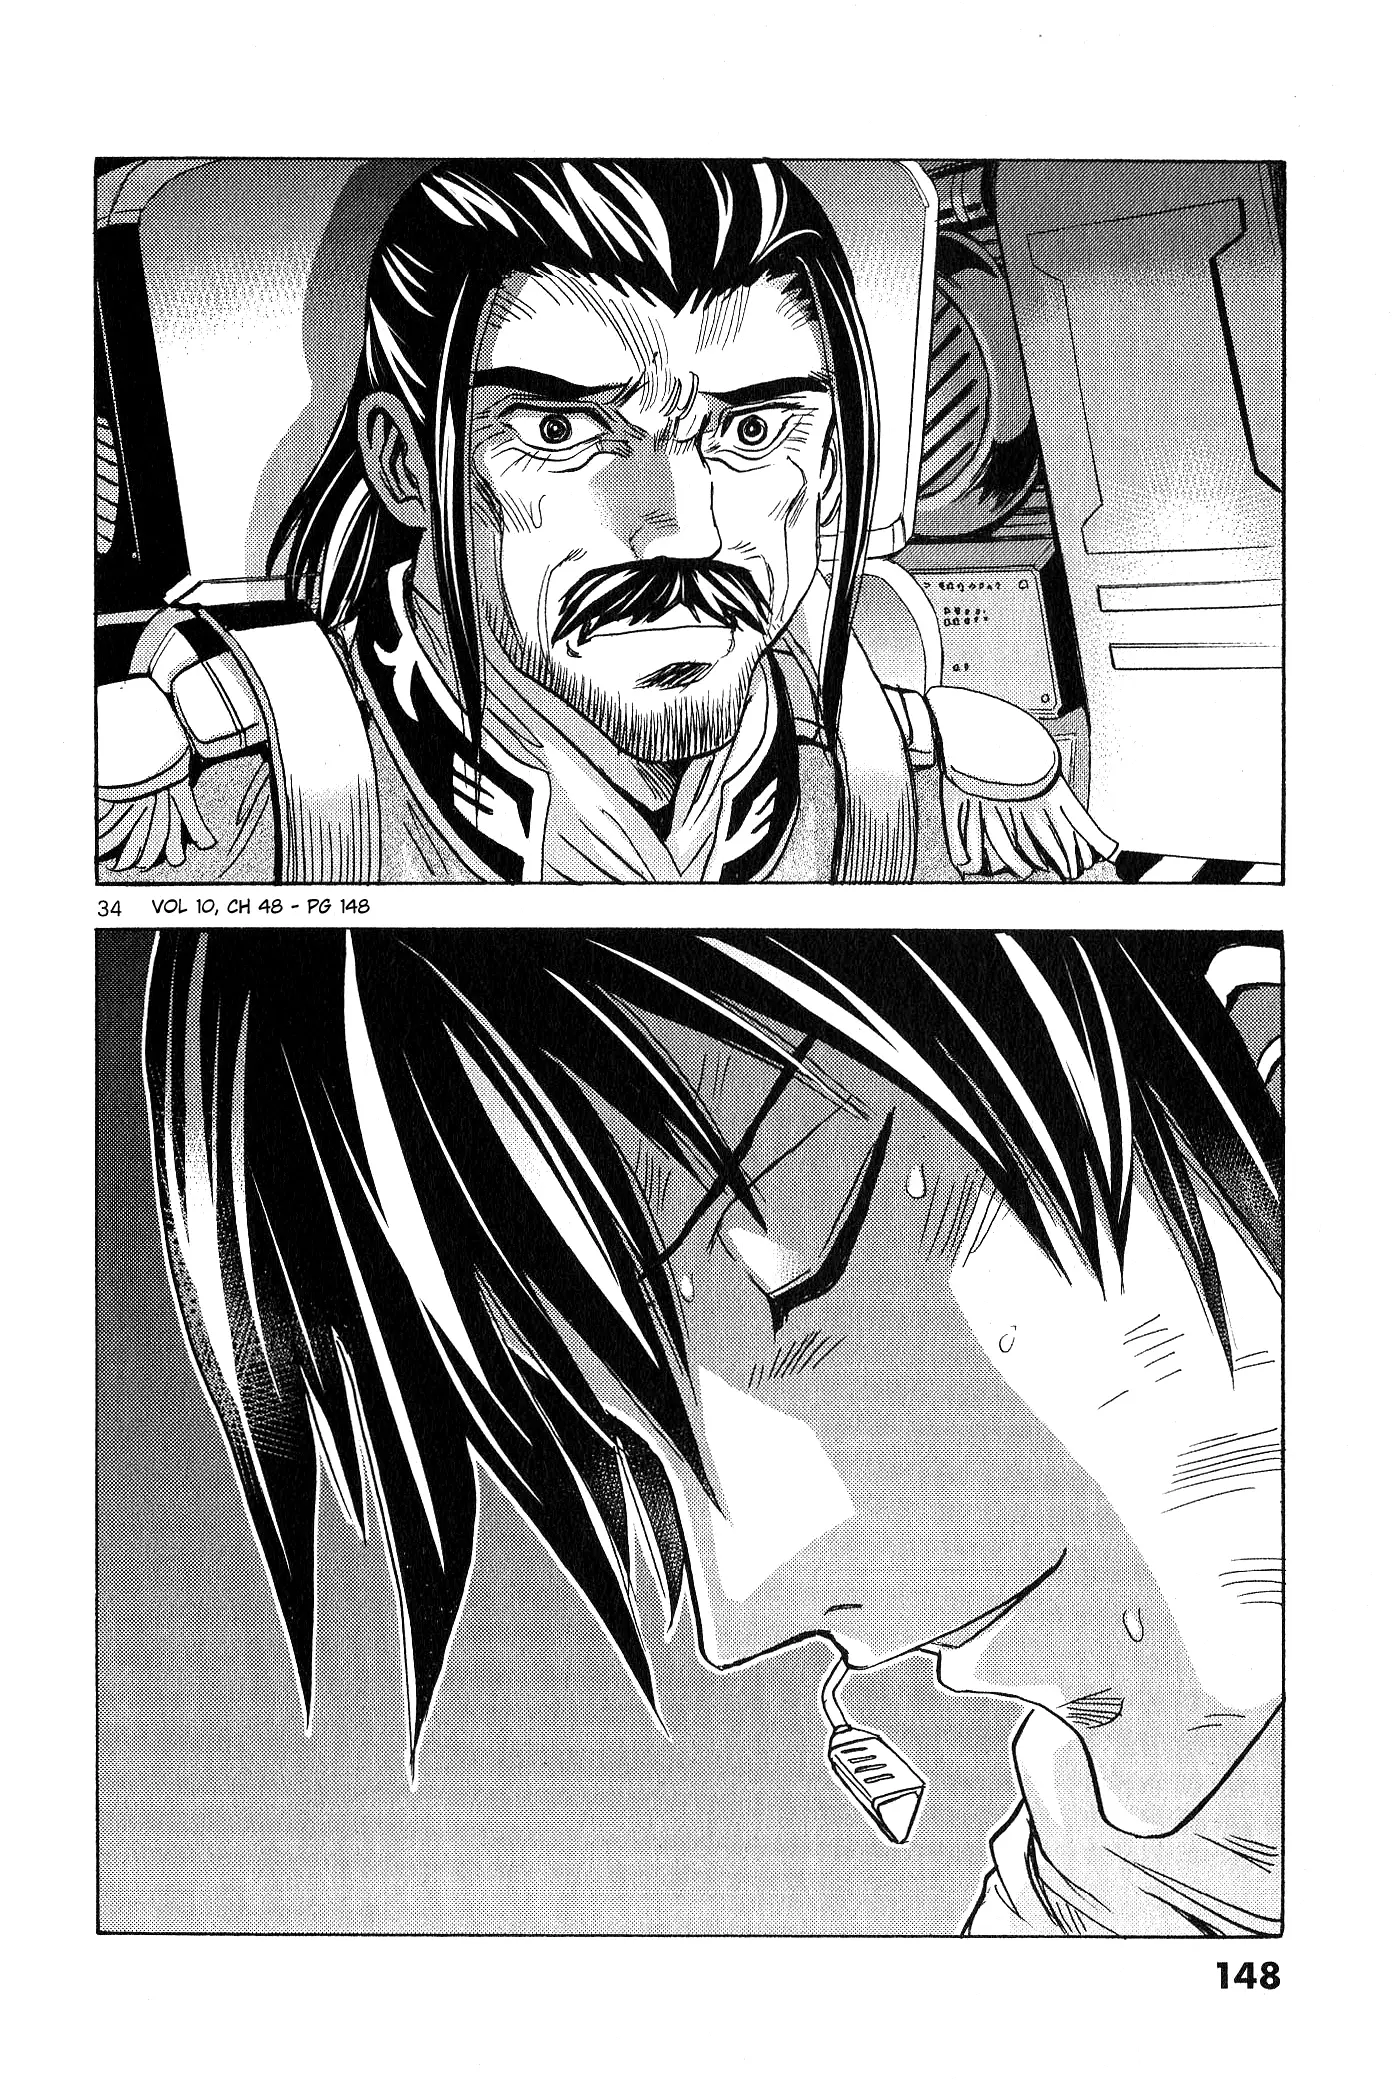 Mobile Suit Gundam Aggressor - 48 page 32-5b5a1e8a